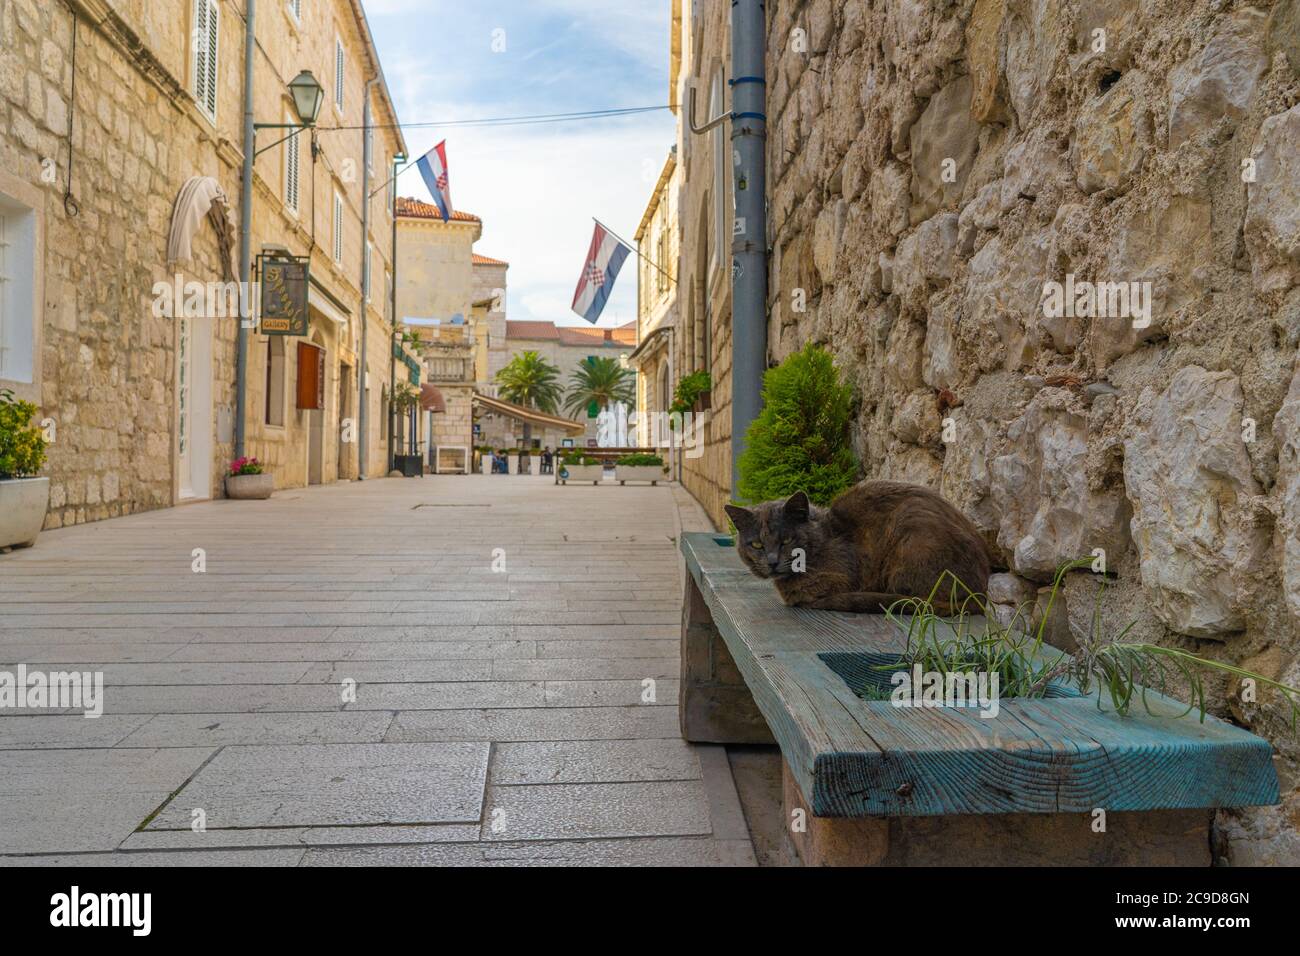 Rue vide de la vieille ville de Rab en Croatie. Drapeau croate. Cat est assis sur le banc sur la rue vide de la ville touristique Rab. Banque D'Images